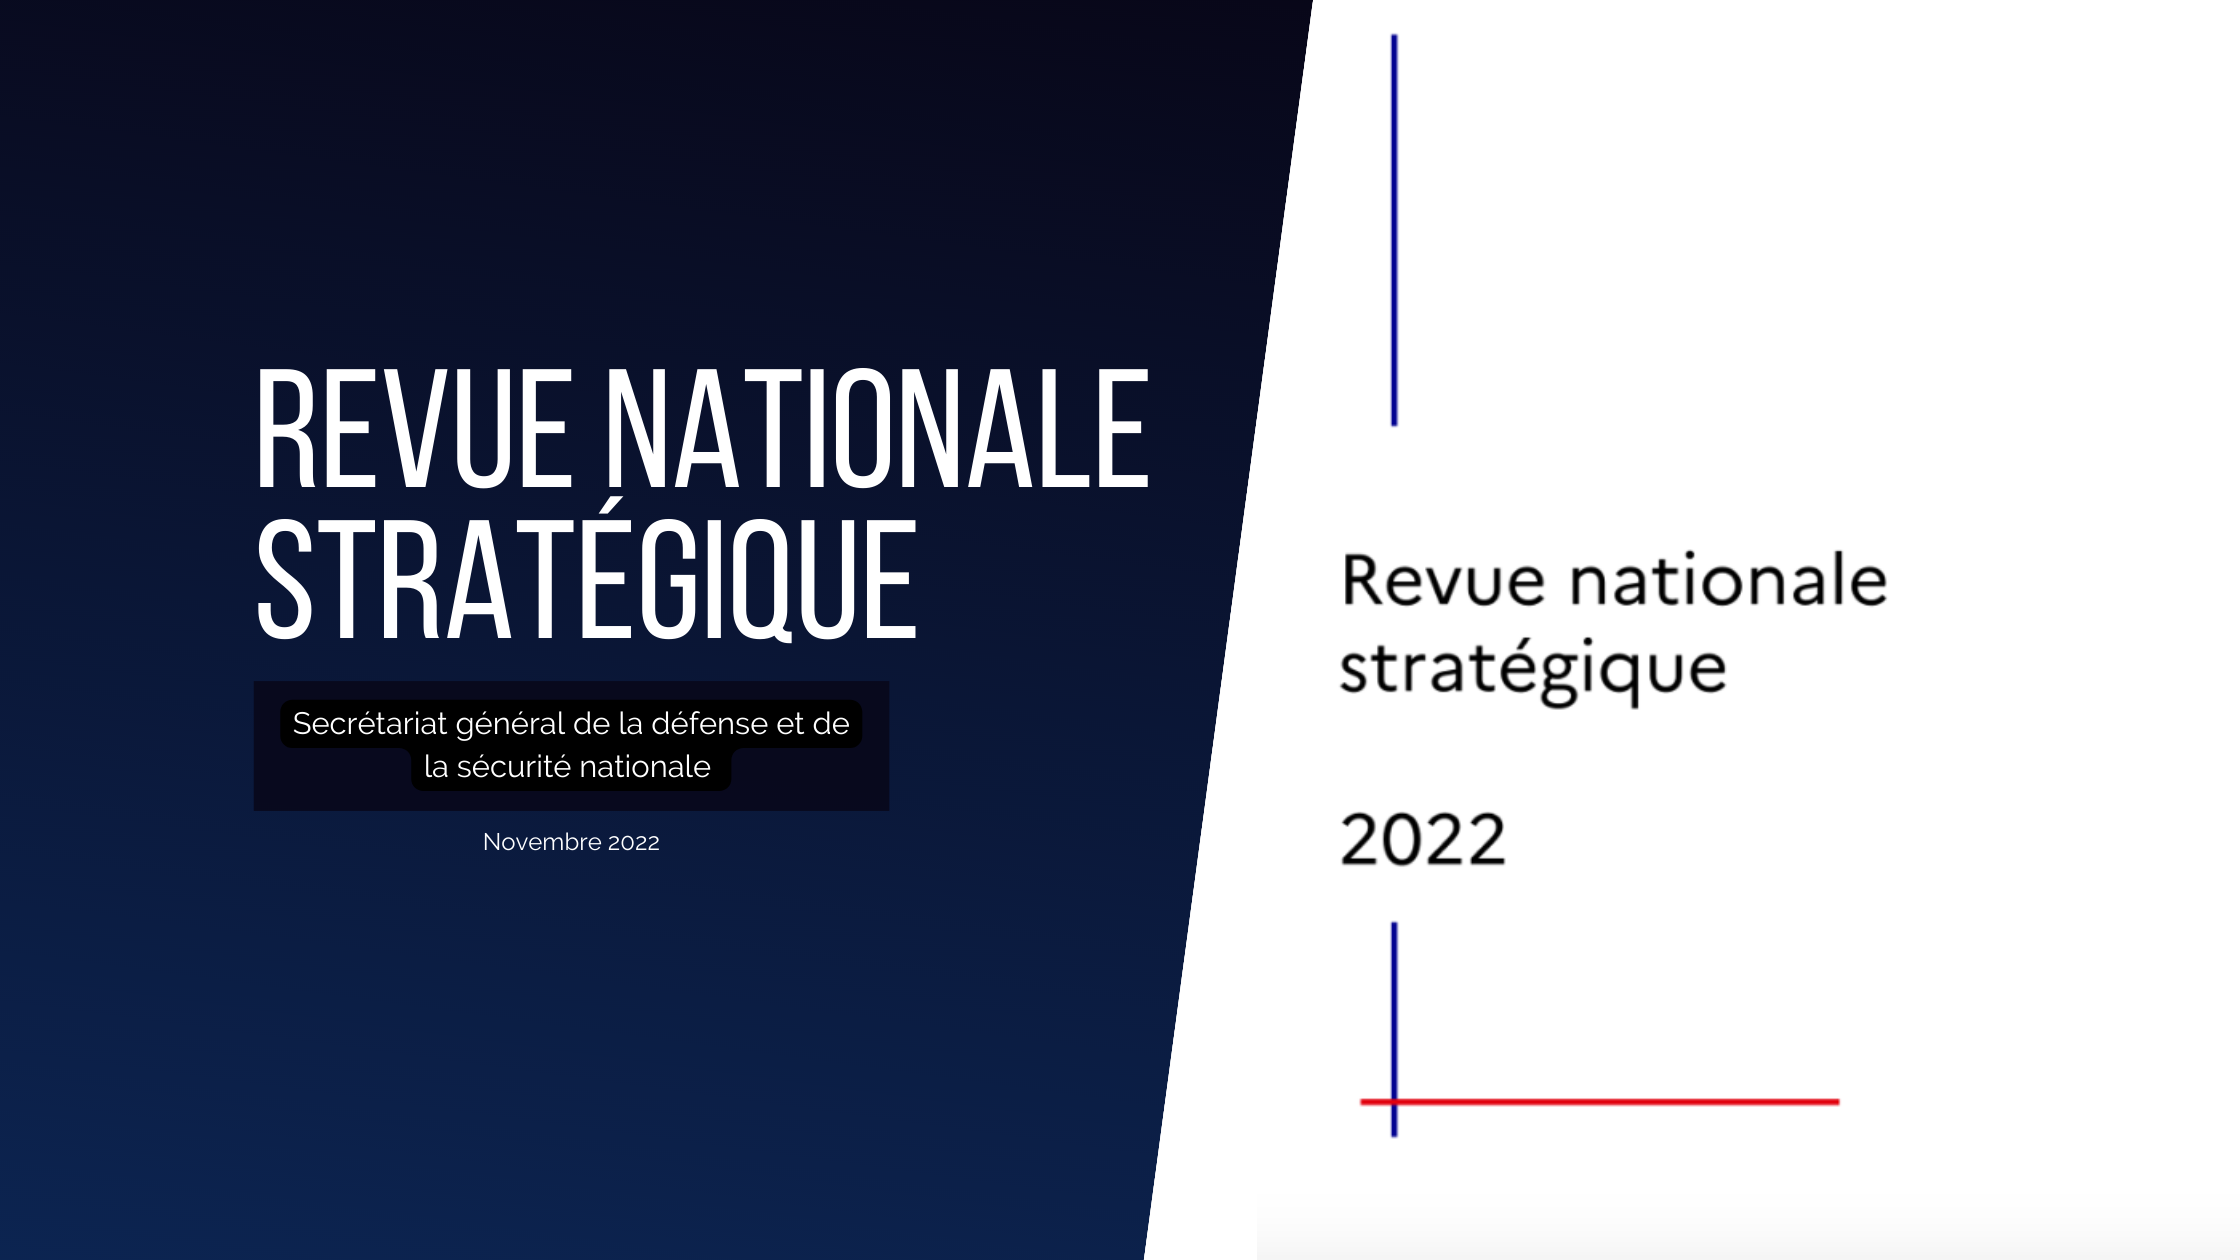 Revue nationale stratégique 2022